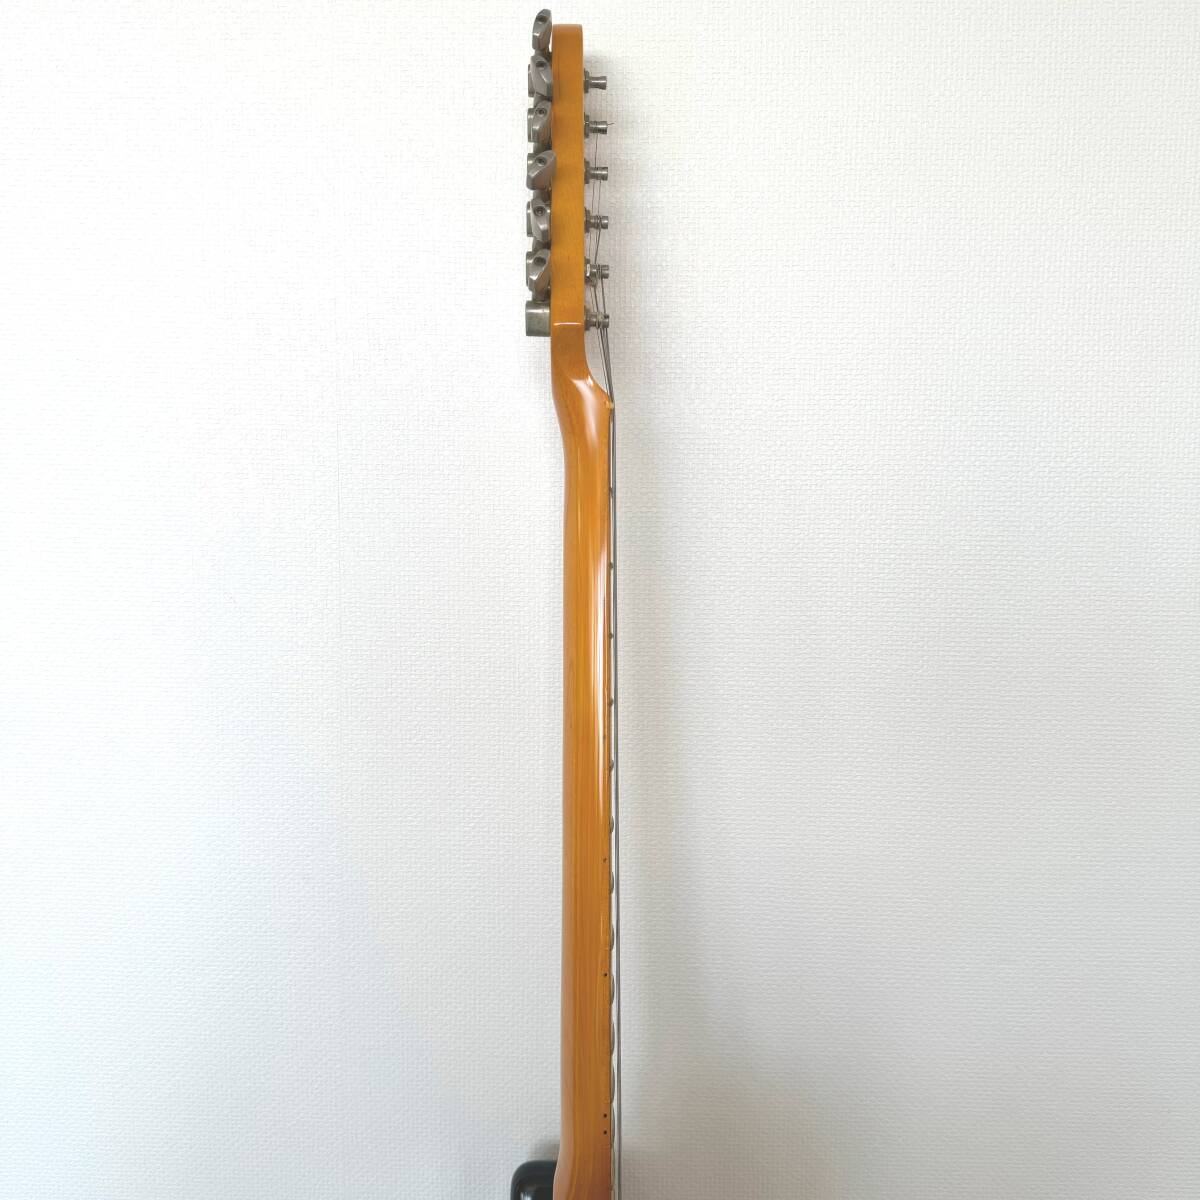 ◆ グレコ Greco エレキギター ストラトキャスターモデル SE500 ジャンク 1978年製 日本製 ブラウン 楽器 本体 弦楽器 バンド 音楽_画像8